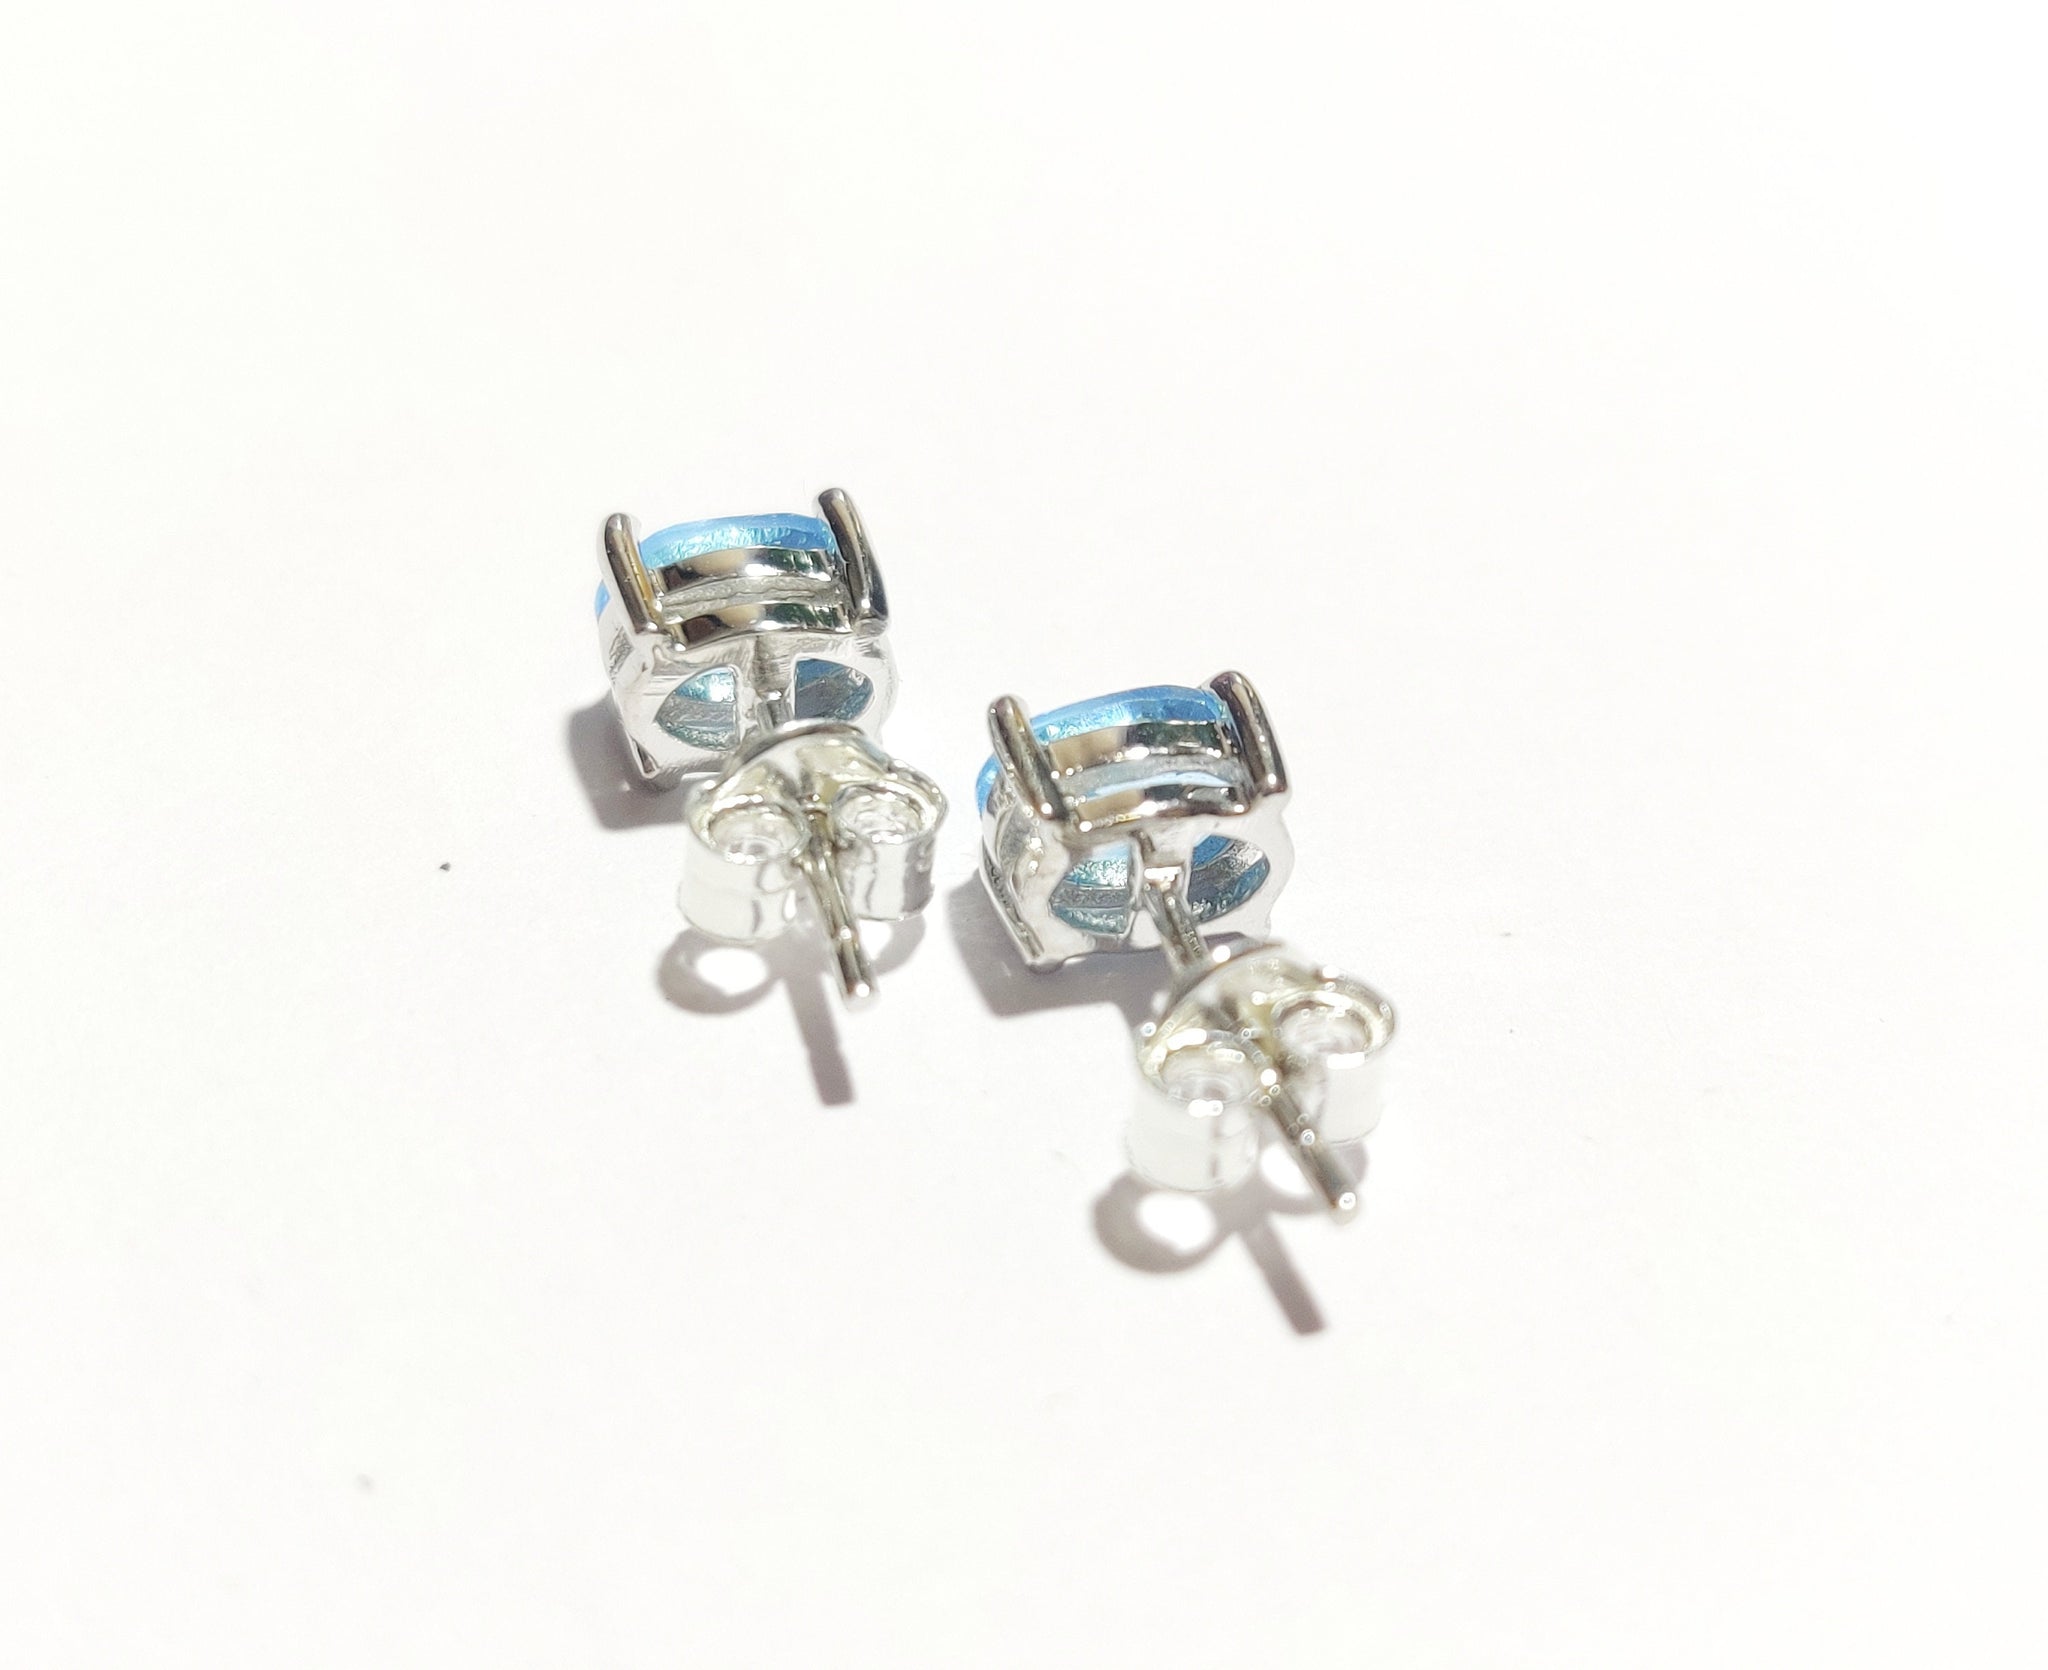 Silver Swiss Blue Topaz Stud Earrings 5x7 mm Oval 2.2 Ct Swiss Blue Topaz Ear Studs Birthstone Stud Earrings Genuine Blue Topaz Earring